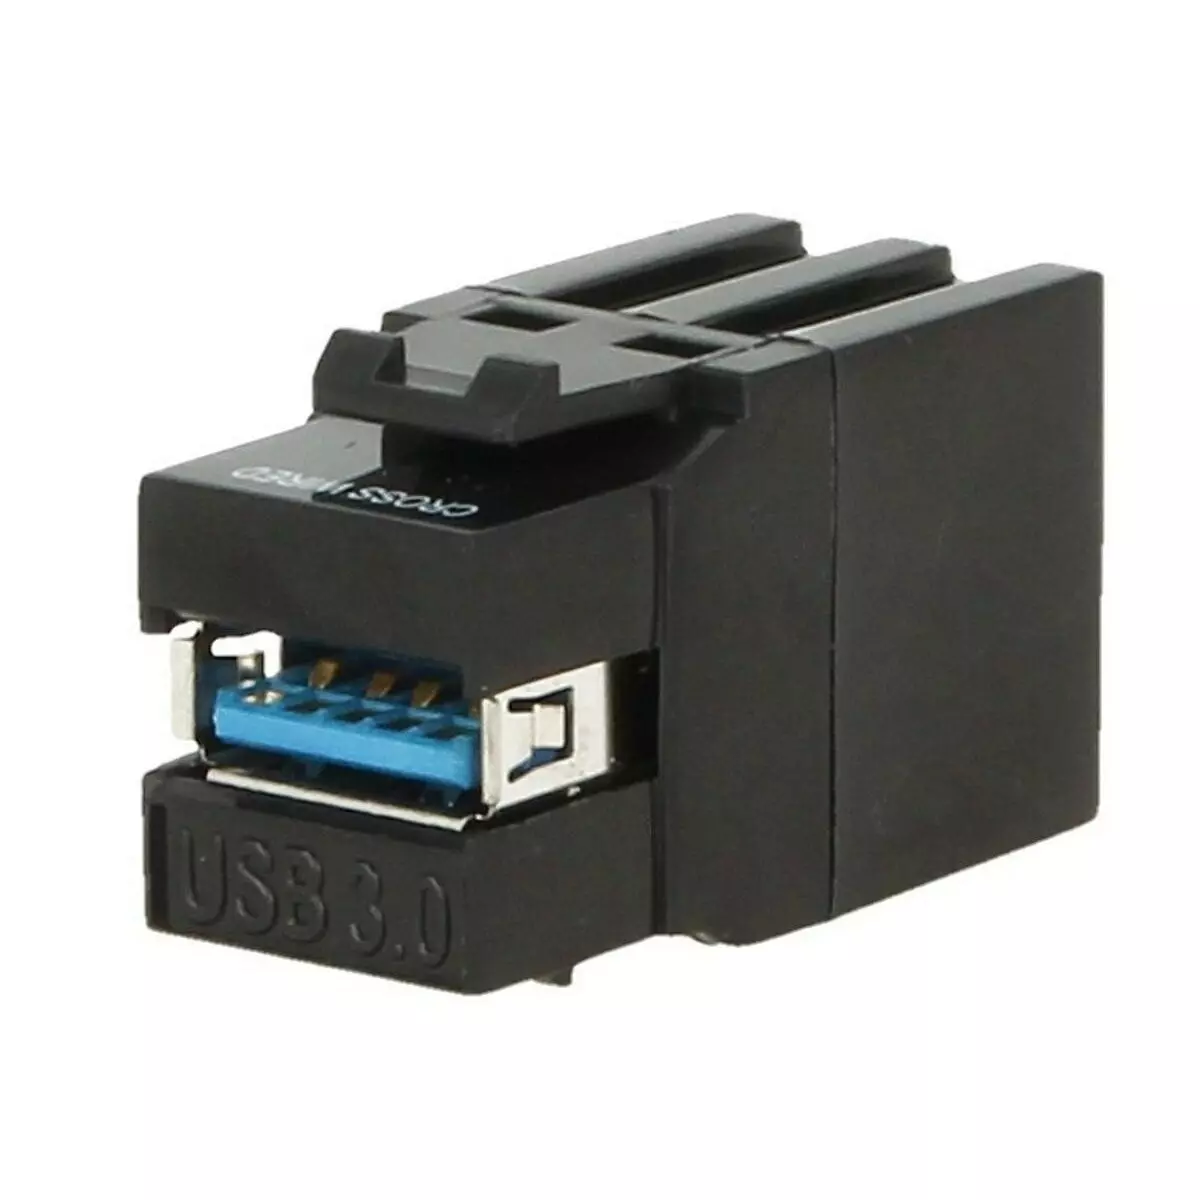 Gniazdo USB 3.0 Keystone czarne